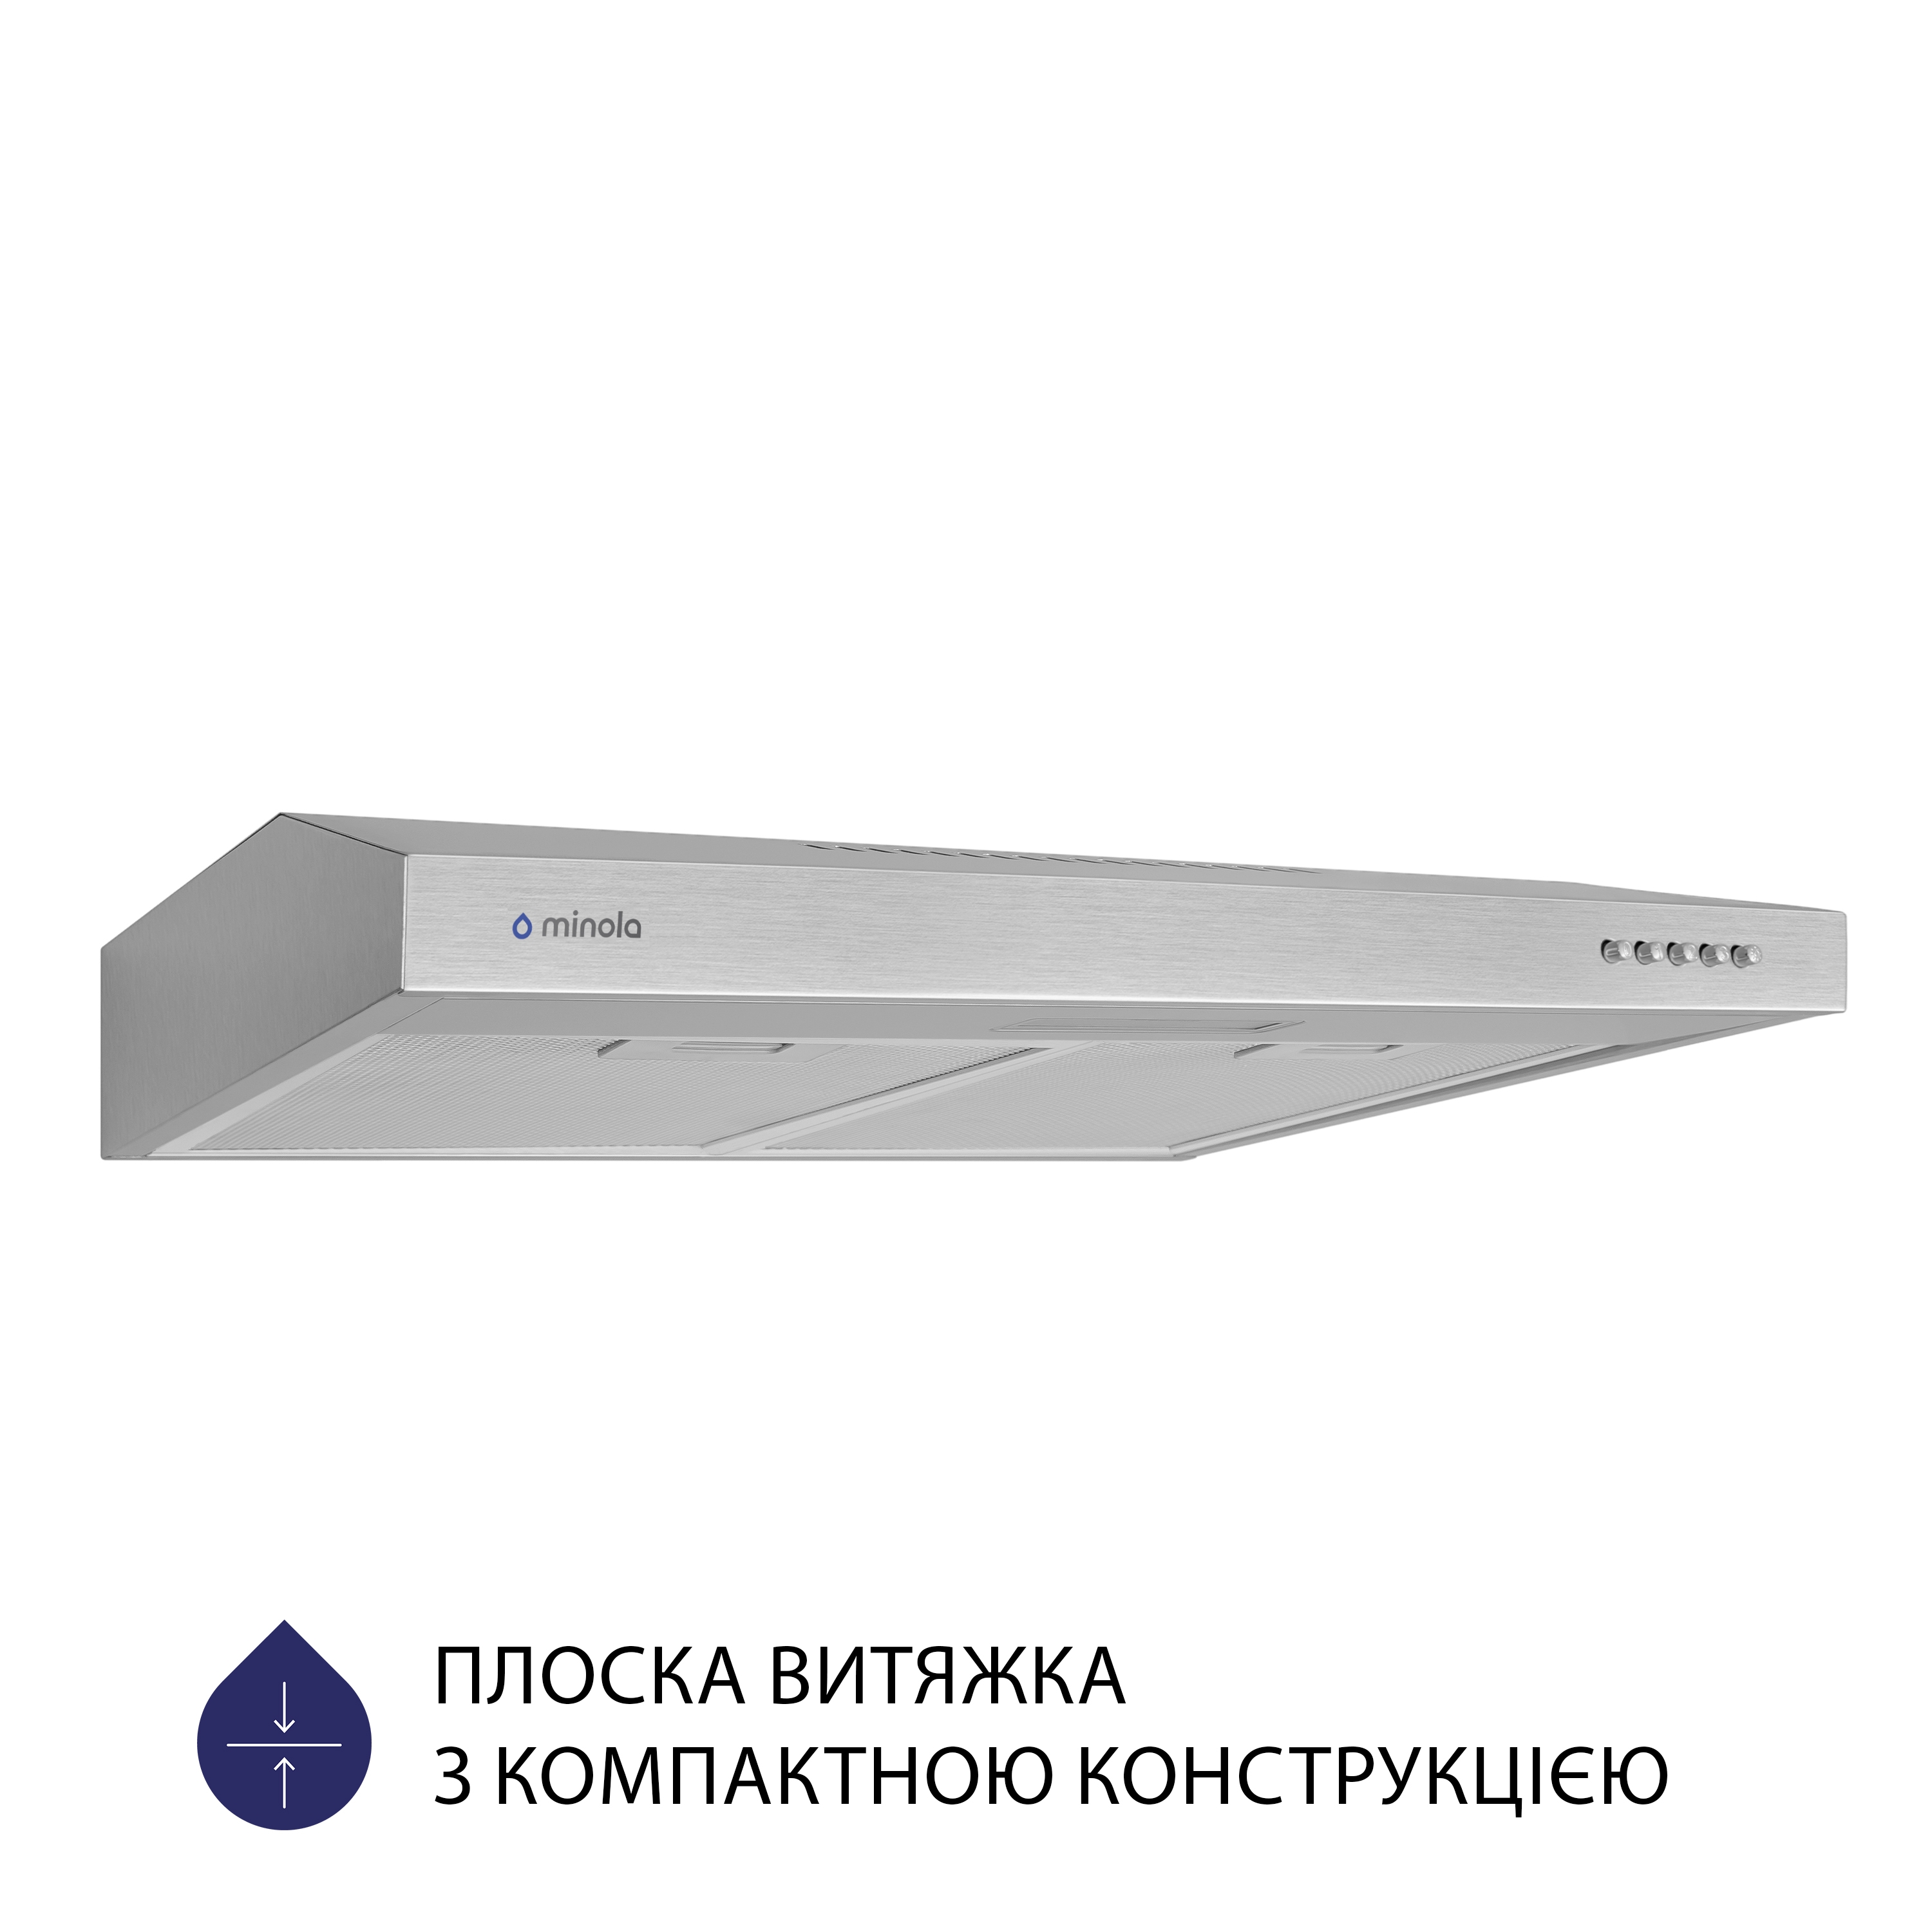 Витяжка кухонная плоская Minola HPL 613 I цена 2799.00 грн - фотография 2